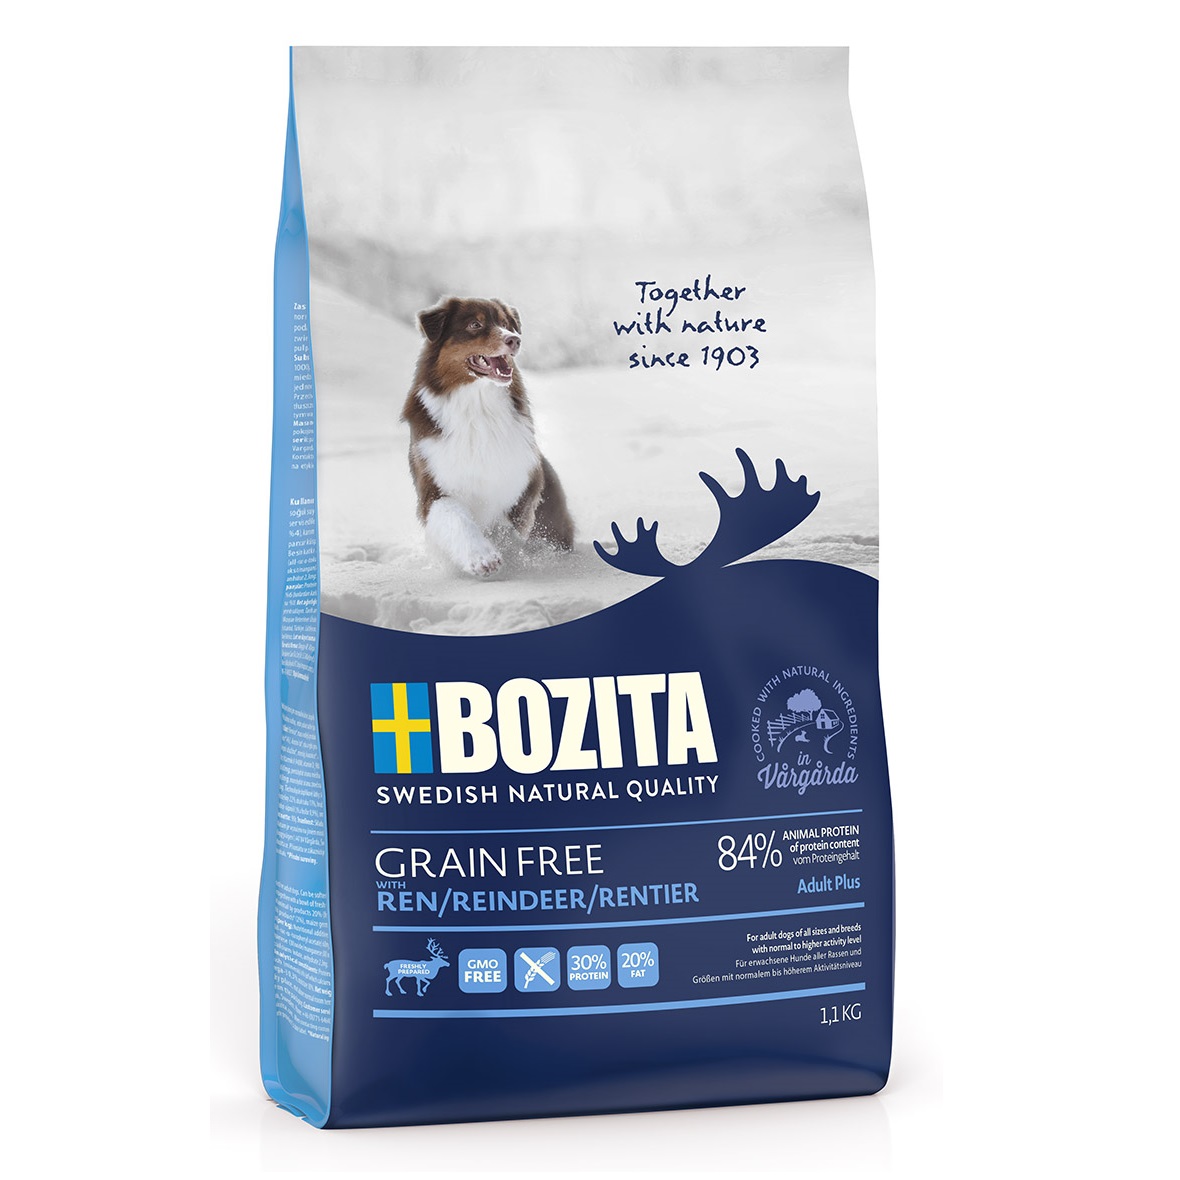 Bozita GRAIN FREE Reindeer сухой беззерновой корм с мясом оленя для взрослых собак с повышенным уровнем активности, 1,1кг